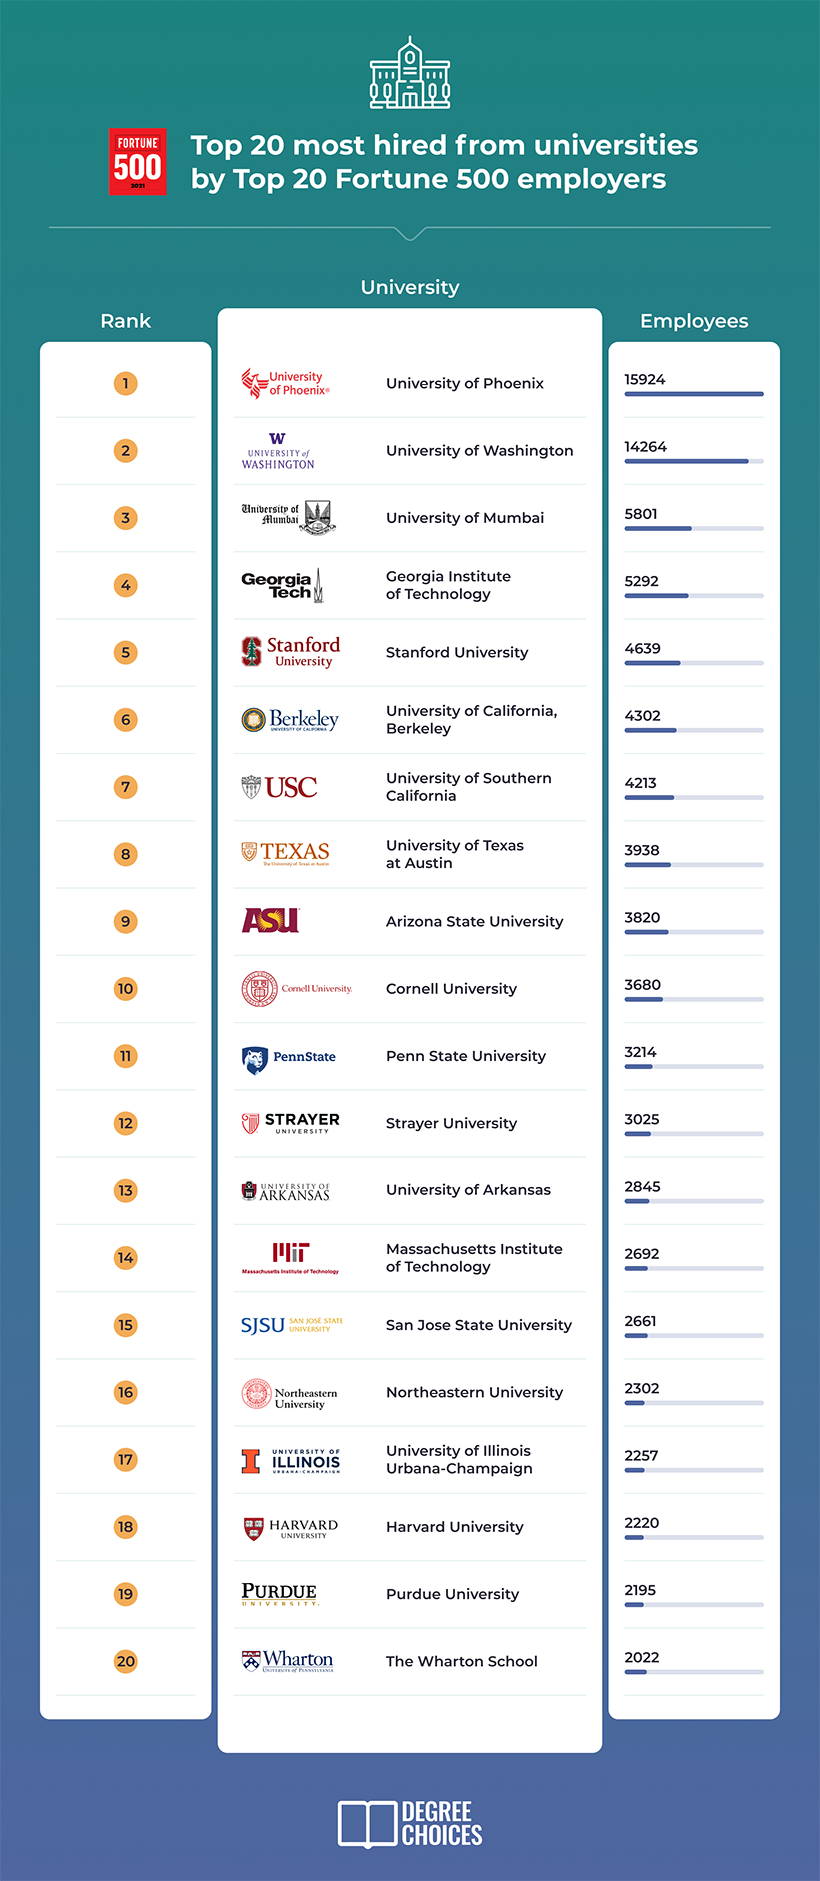 全美500强企业偏爱的大学和专业有哪些？第一名竟闻所未闻！